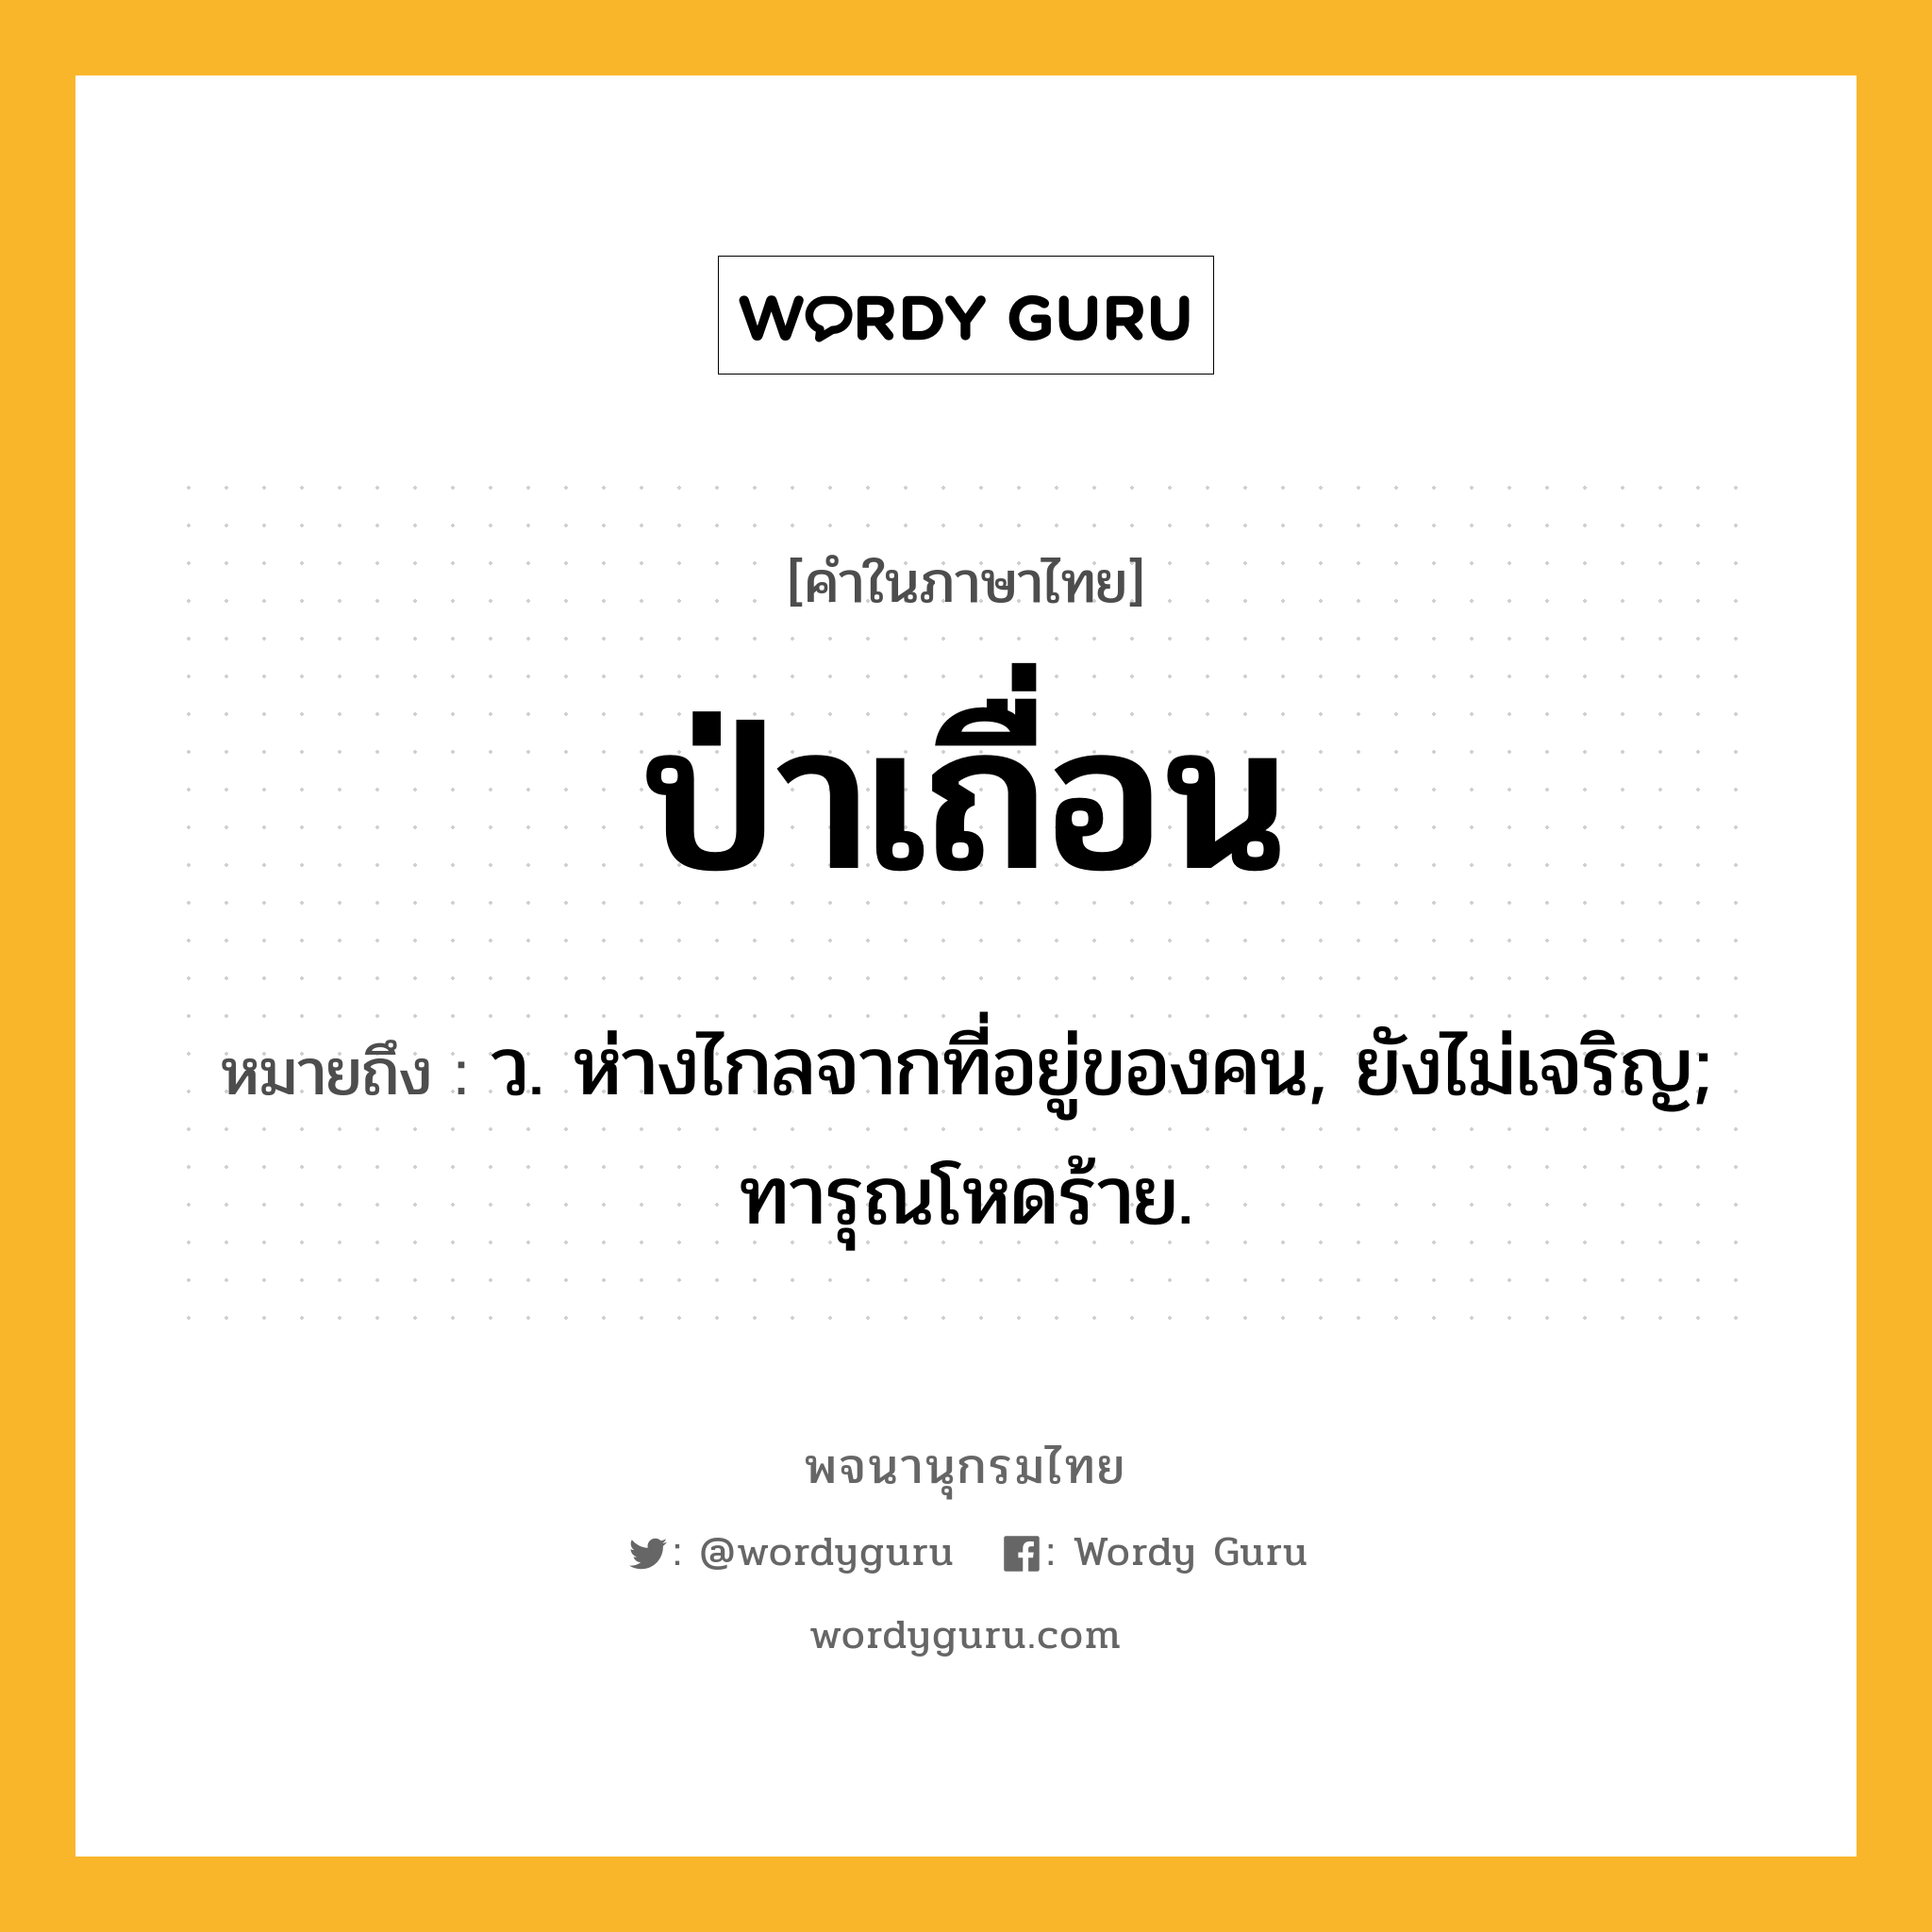 ป่าเถื่อน หมายถึงอะไร?, คำในภาษาไทย ป่าเถื่อน หมายถึง ว. ห่างไกลจากที่อยู่ของคน, ยังไม่เจริญ; ทารุณโหดร้าย.